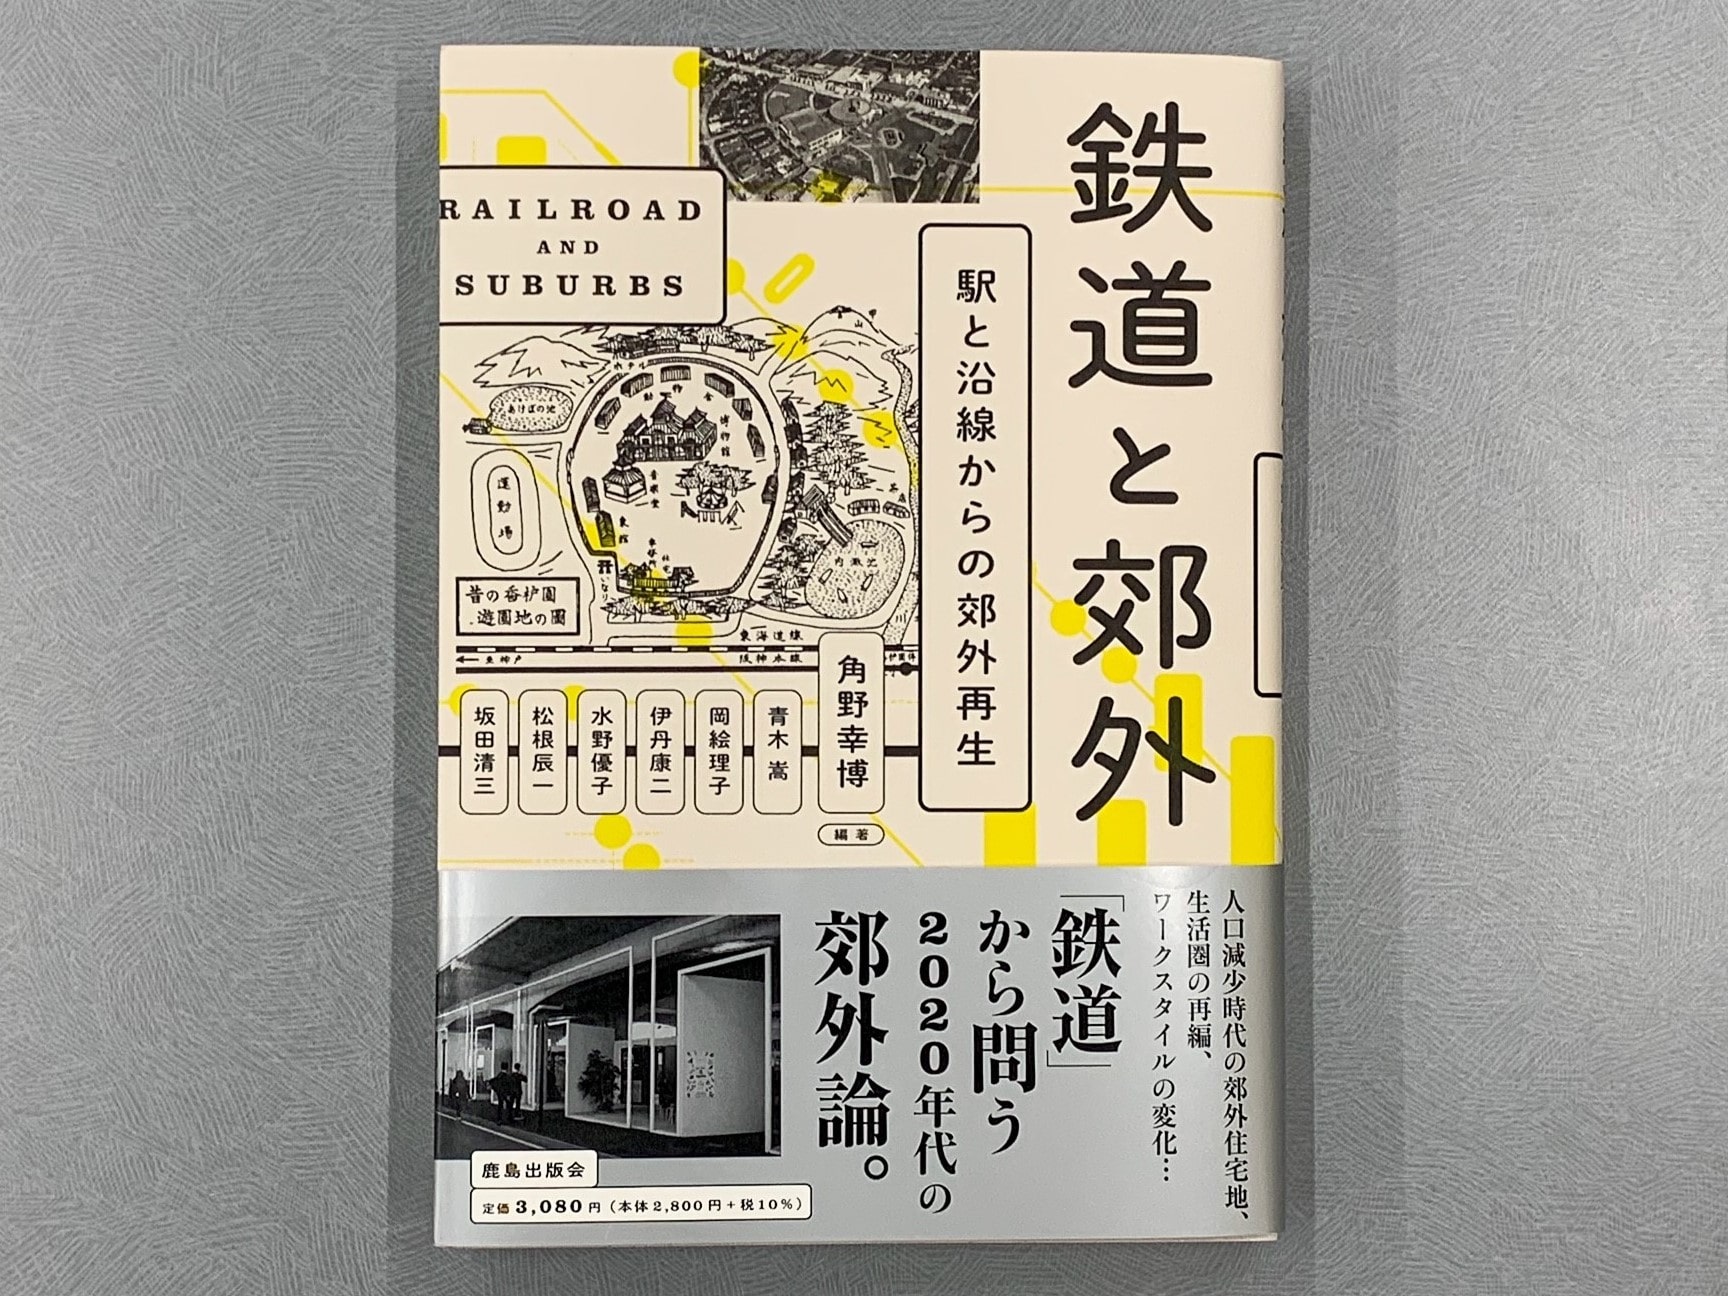 角野幸博・建築学部教授が新著『鉄道と郊外 駅と沿線からの郊外再生 